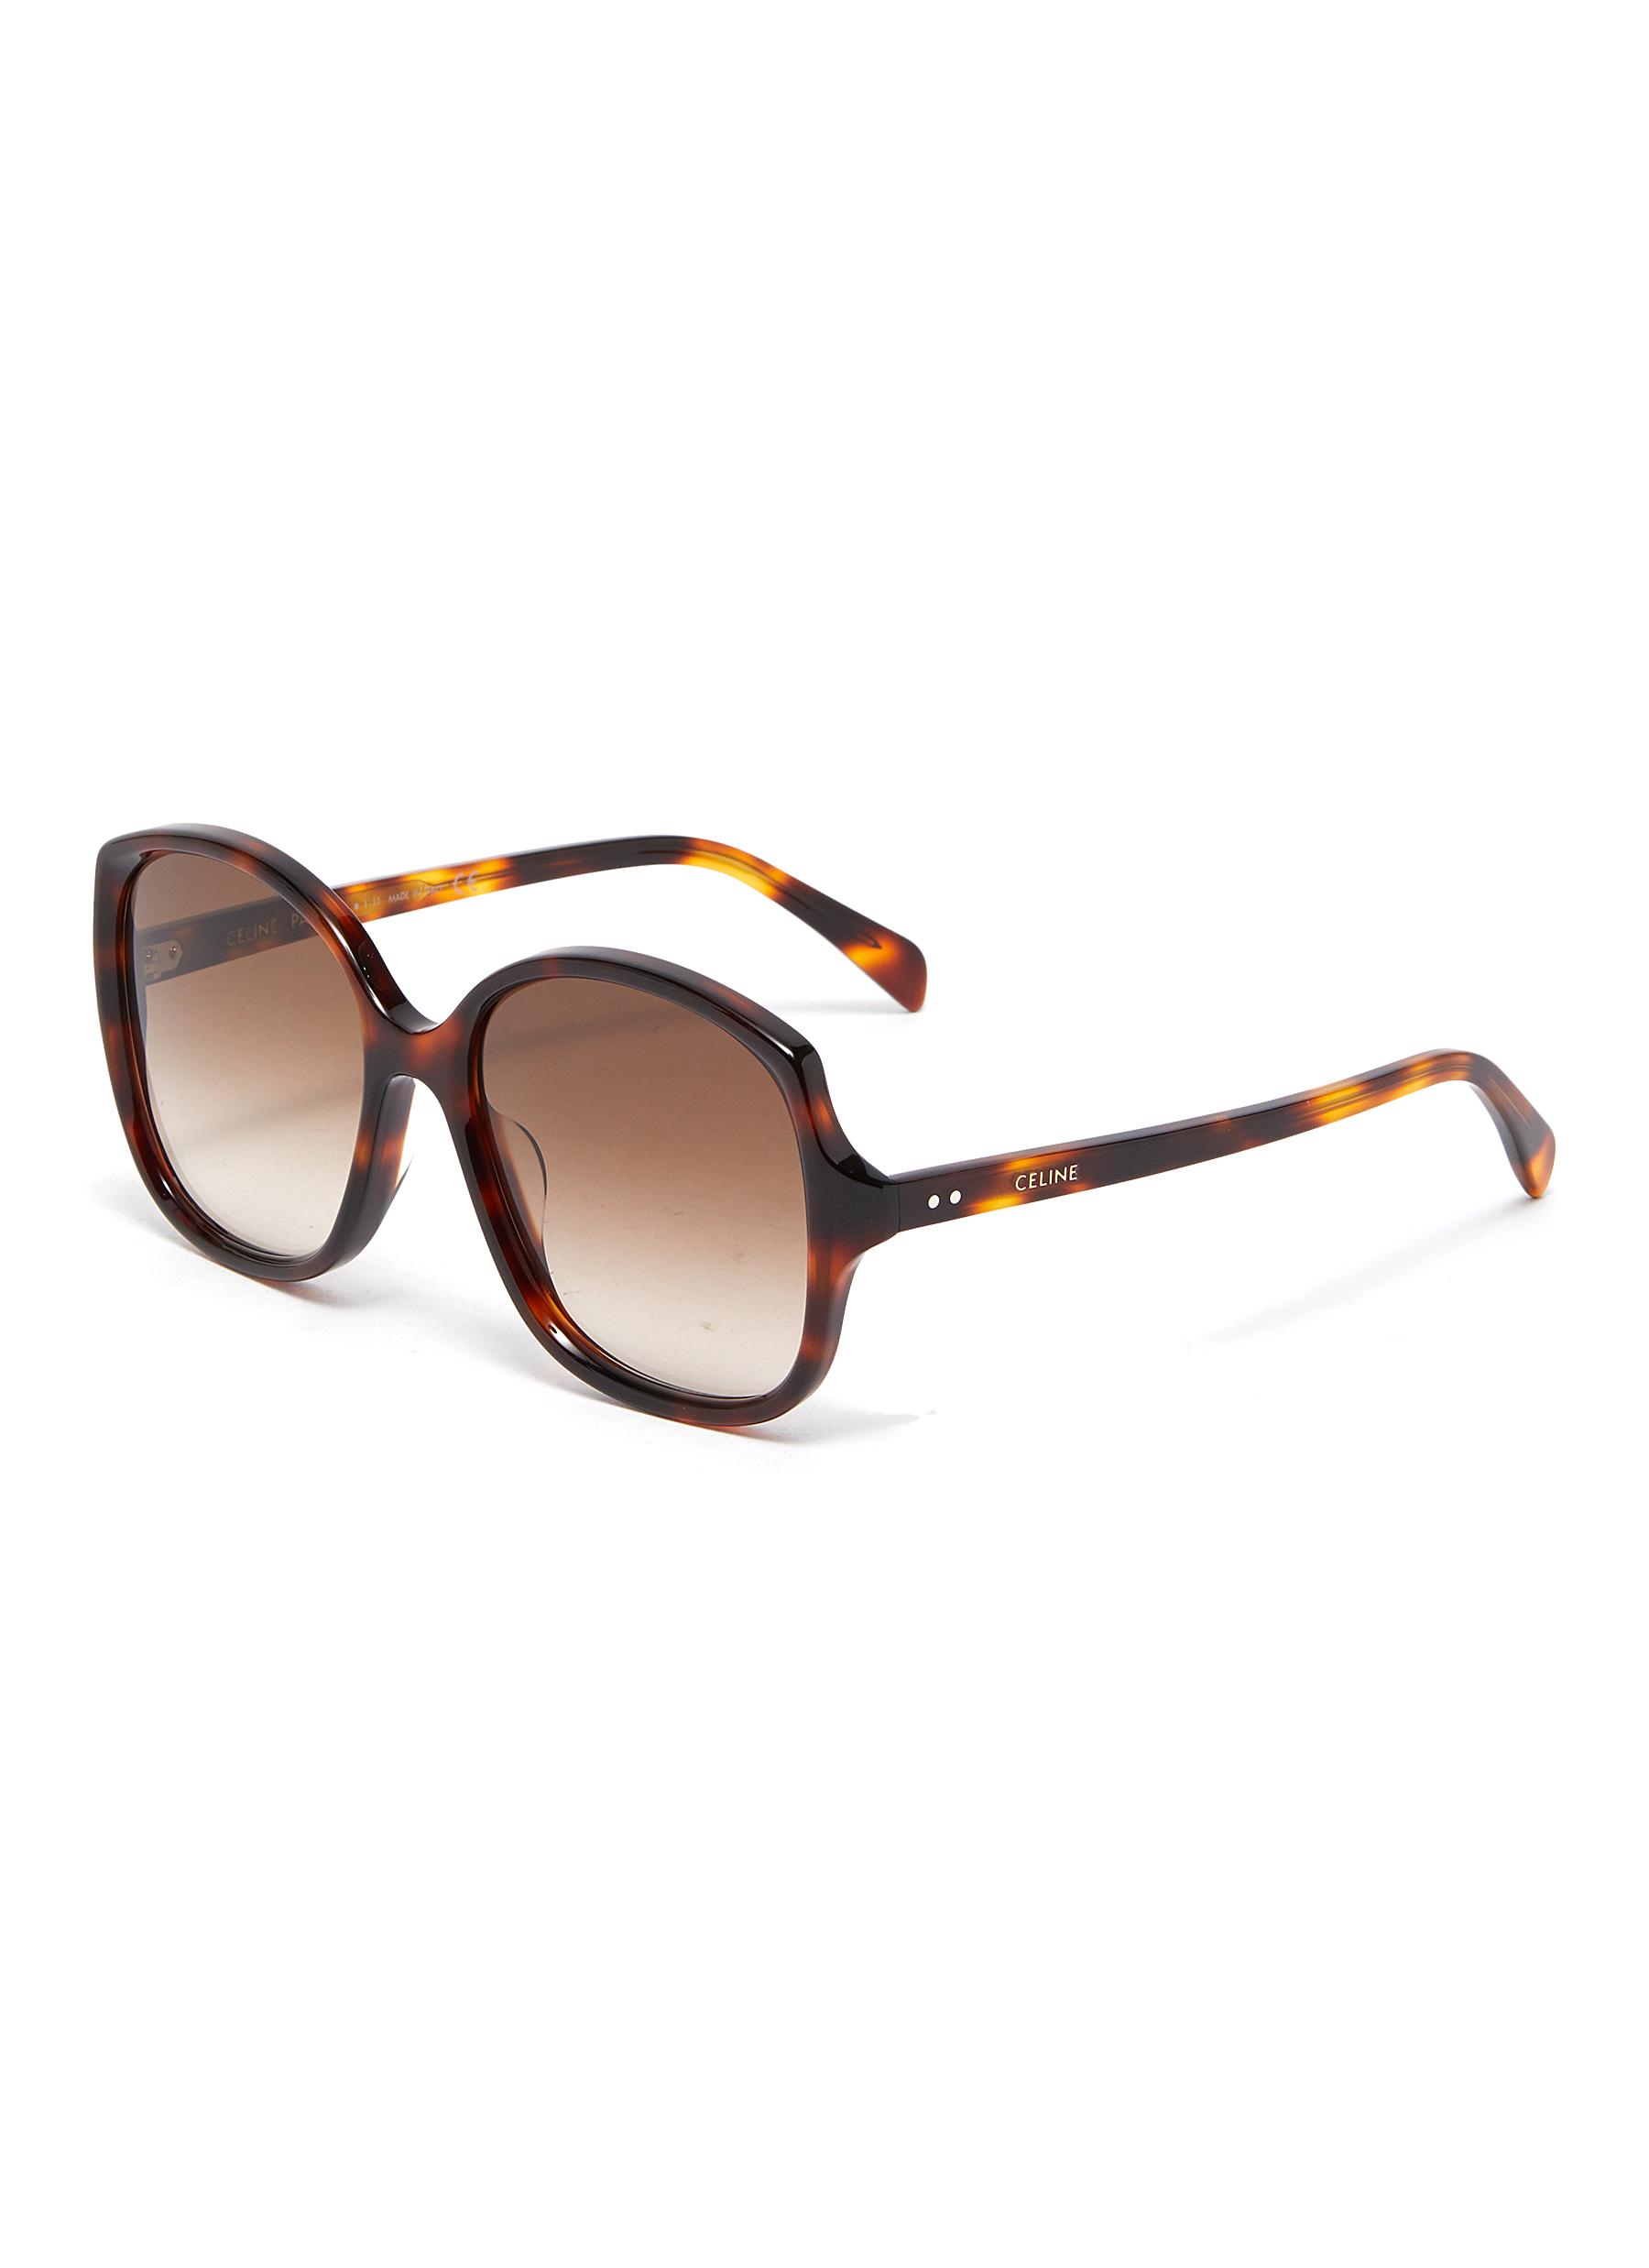 Celine Tortoiseshell Effect Acetate Angular Frame Sunglasses In Multi-colour